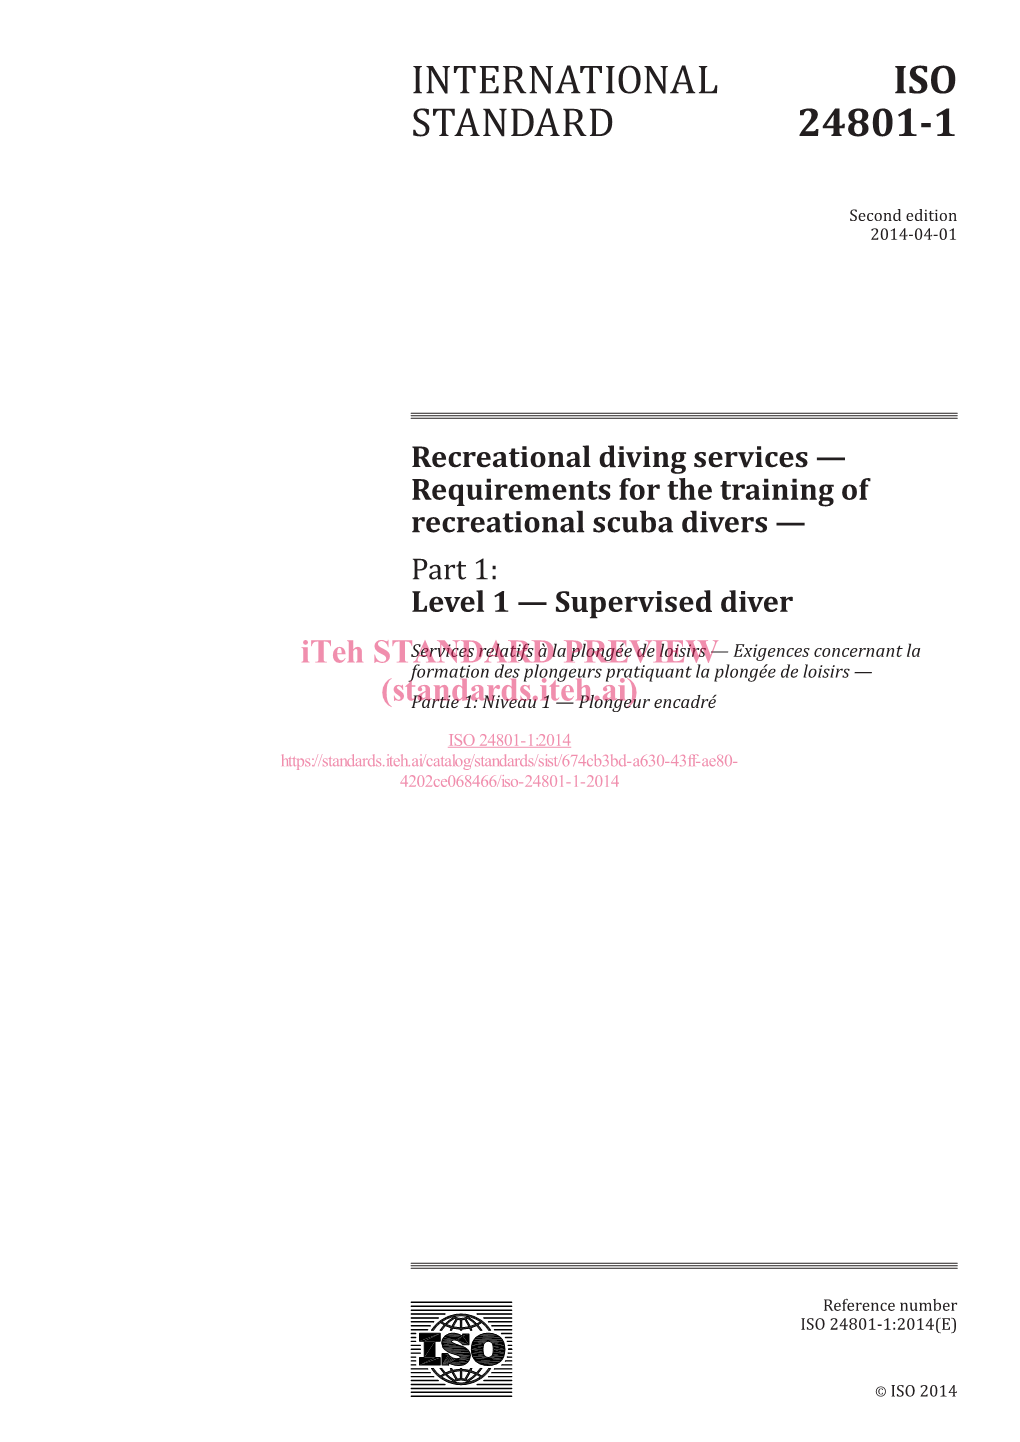 International Standard Iso 24801-1:2014(E)